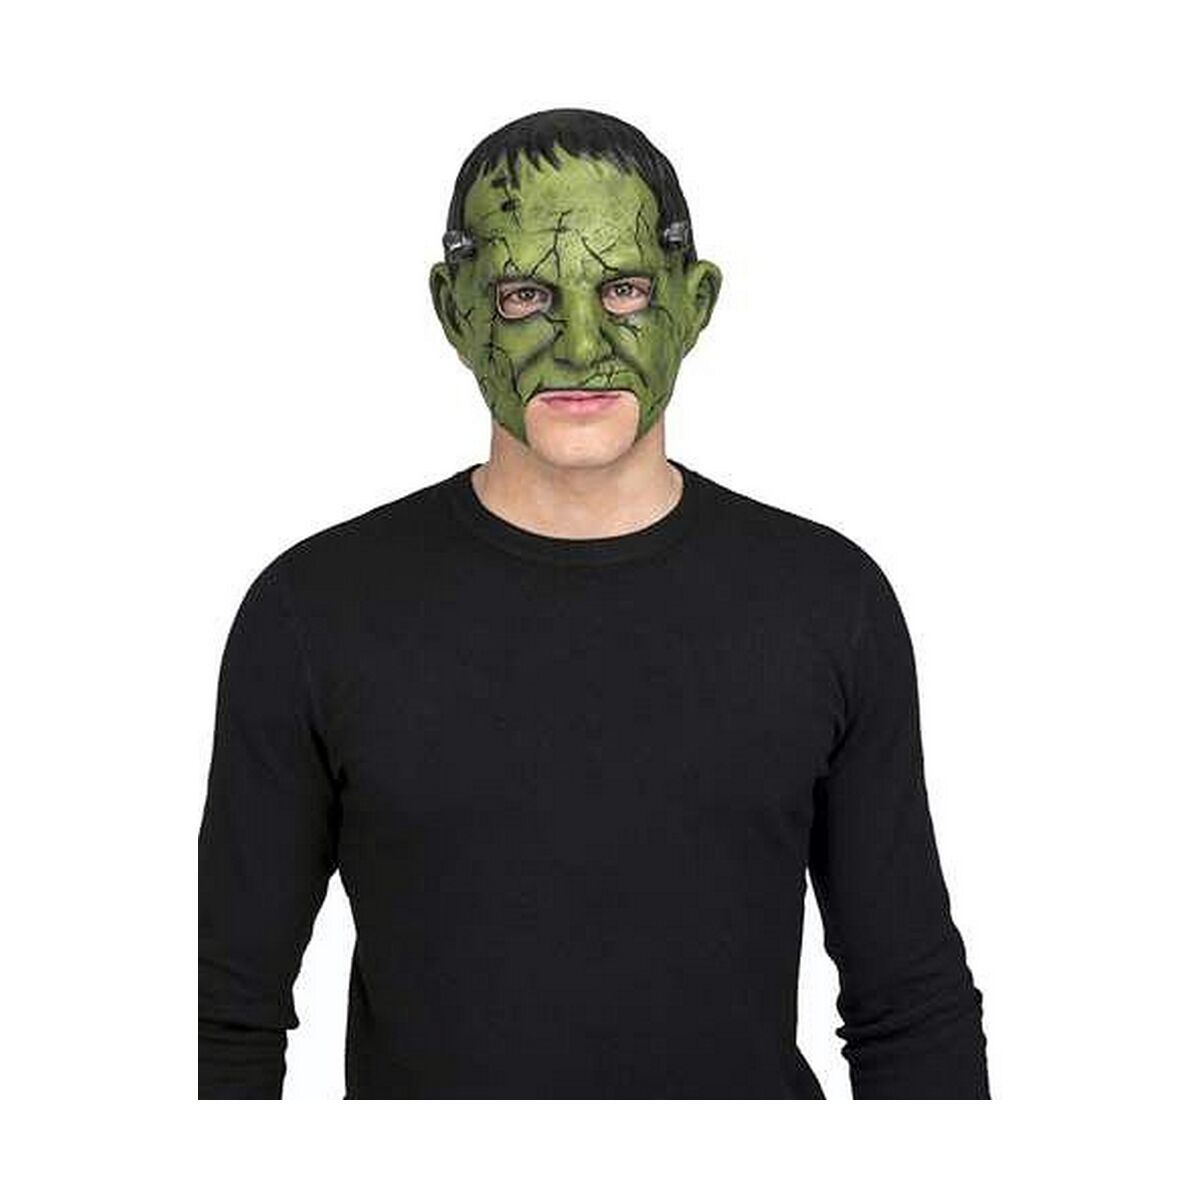 Mask My Other Me Frankenstein Grön One size-Leksaker och spel, Fancy klänning och accessoarer-My Other Me-peaceofhome.se